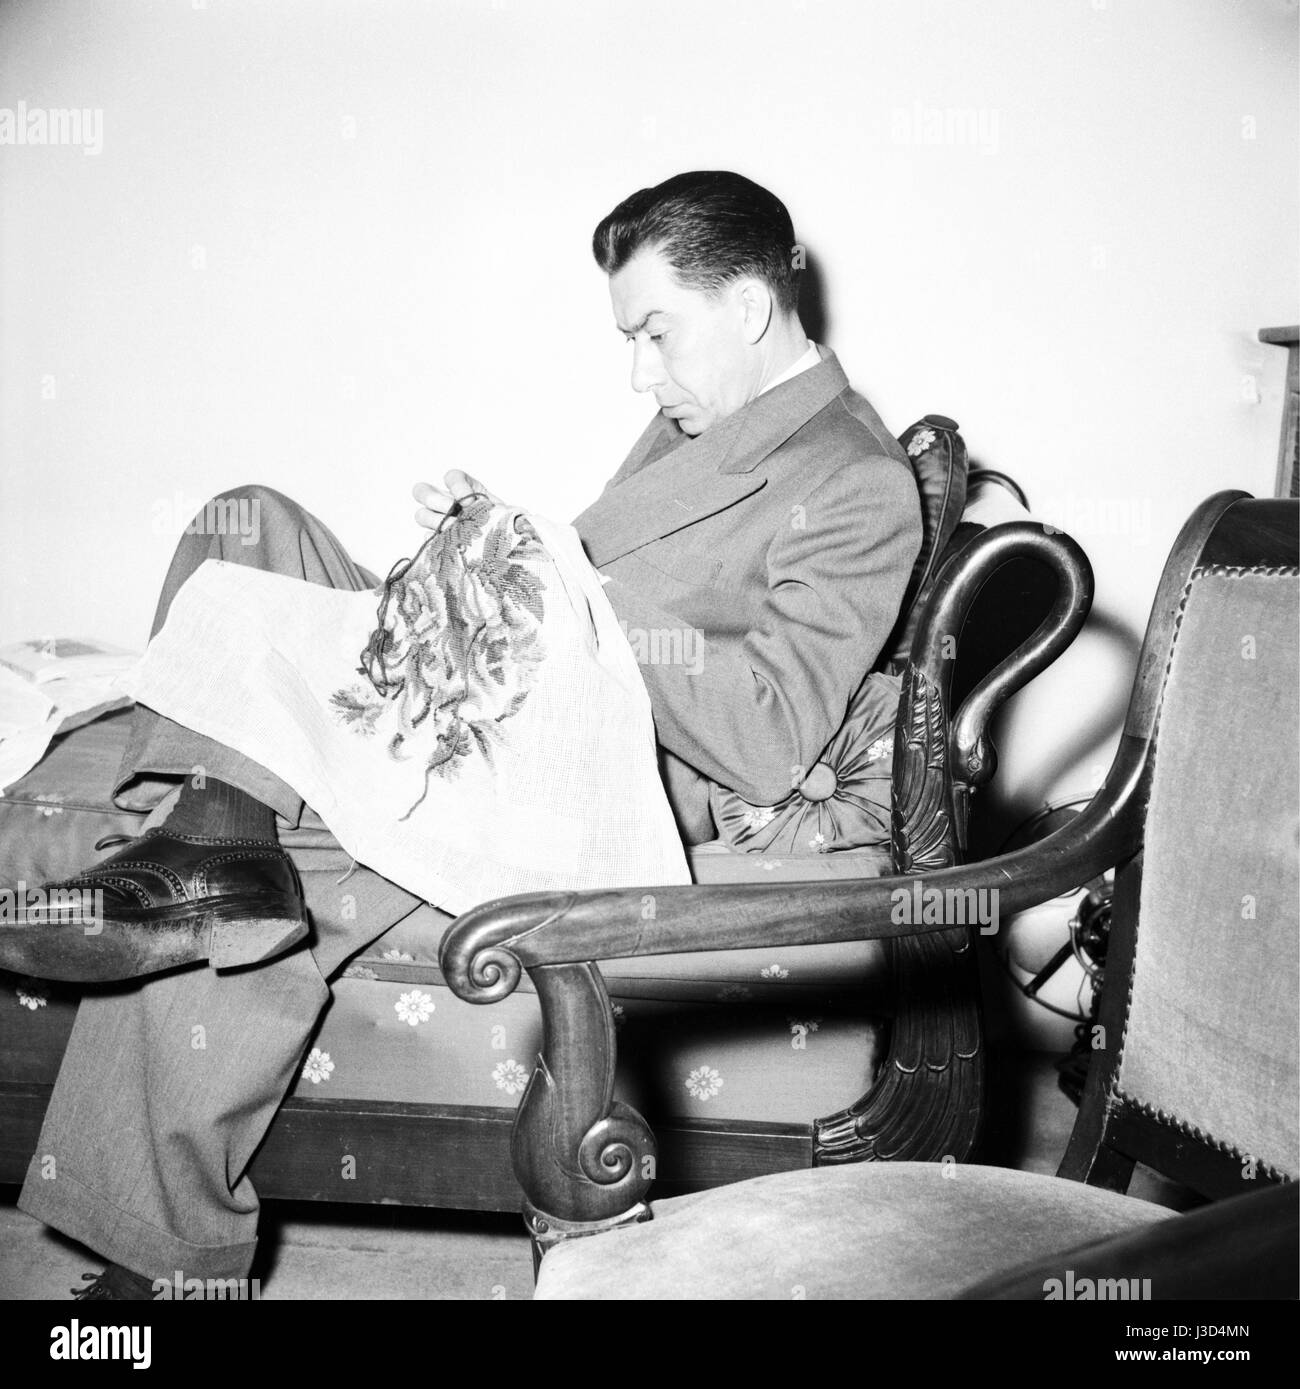 Attore francese Paul Meurisse. c.1958. Foto Georges Rétif de la Bretonne Foto Stock